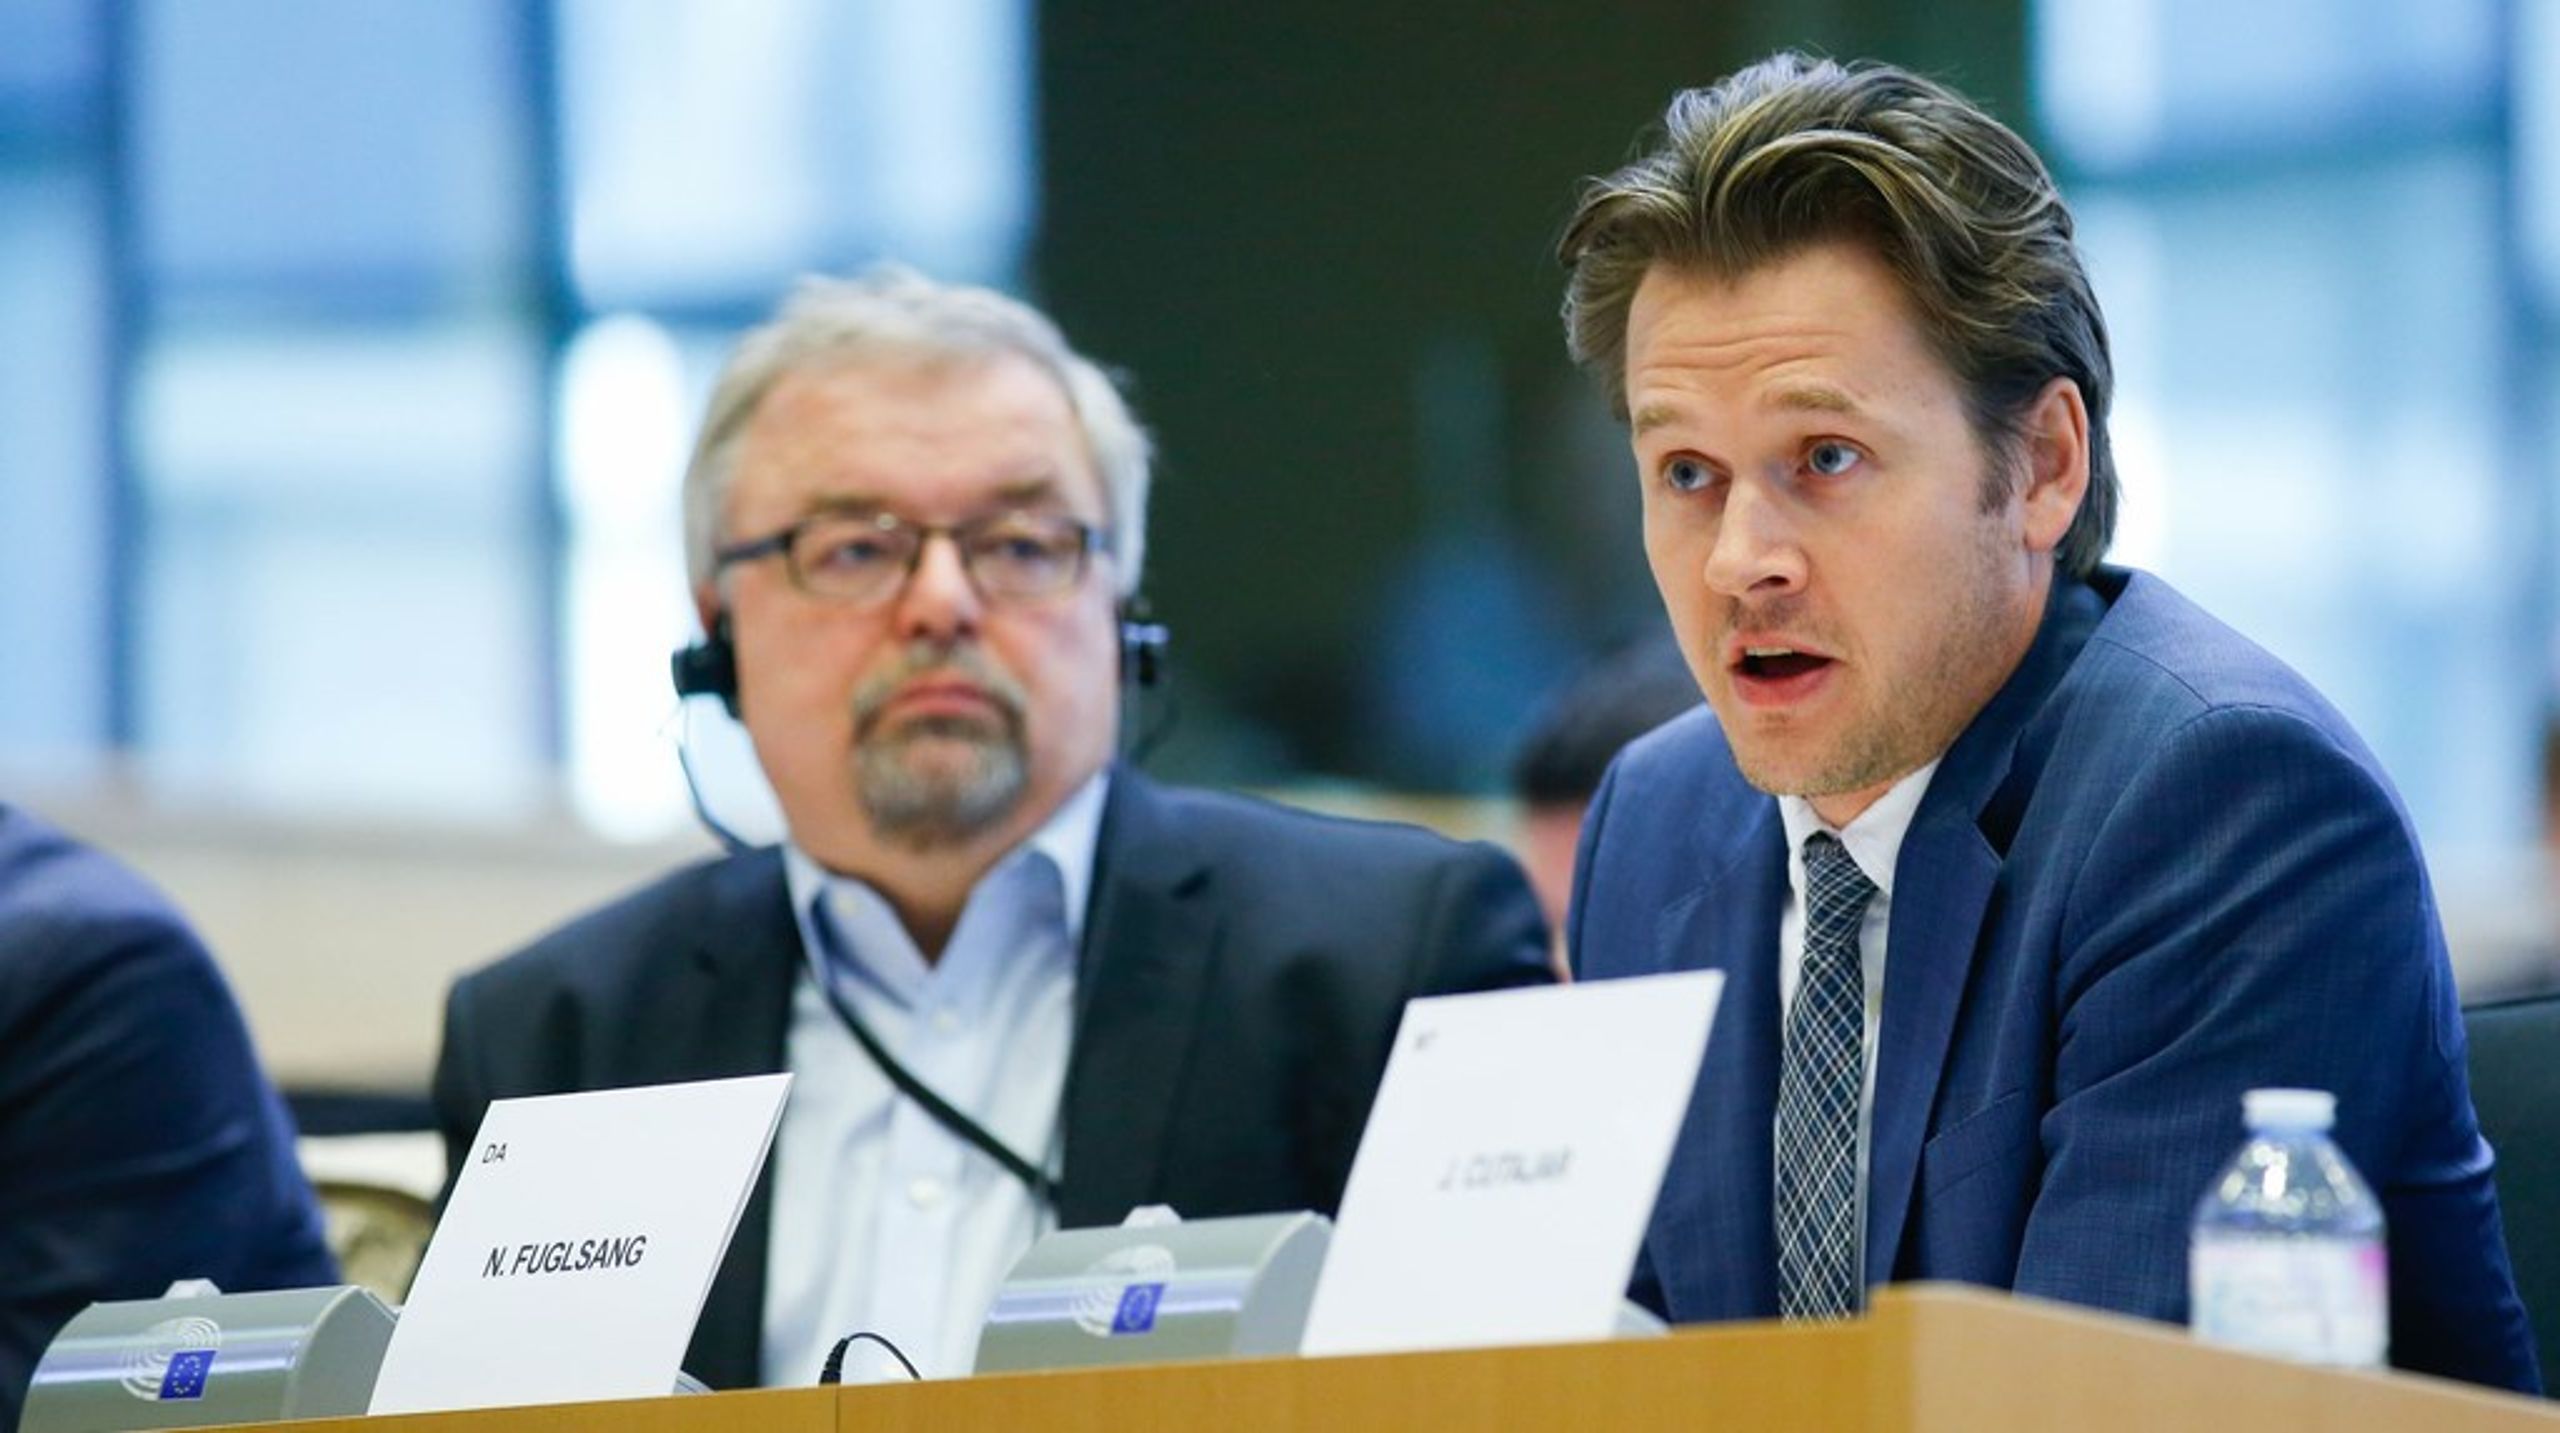 Niels Fuglsang (S) blev til Europa-Parlamentet for første gang i 2019. For nyligt blev han genvalgt som kandidat for partiet forud for valget til Parlamentet næste år.&nbsp;